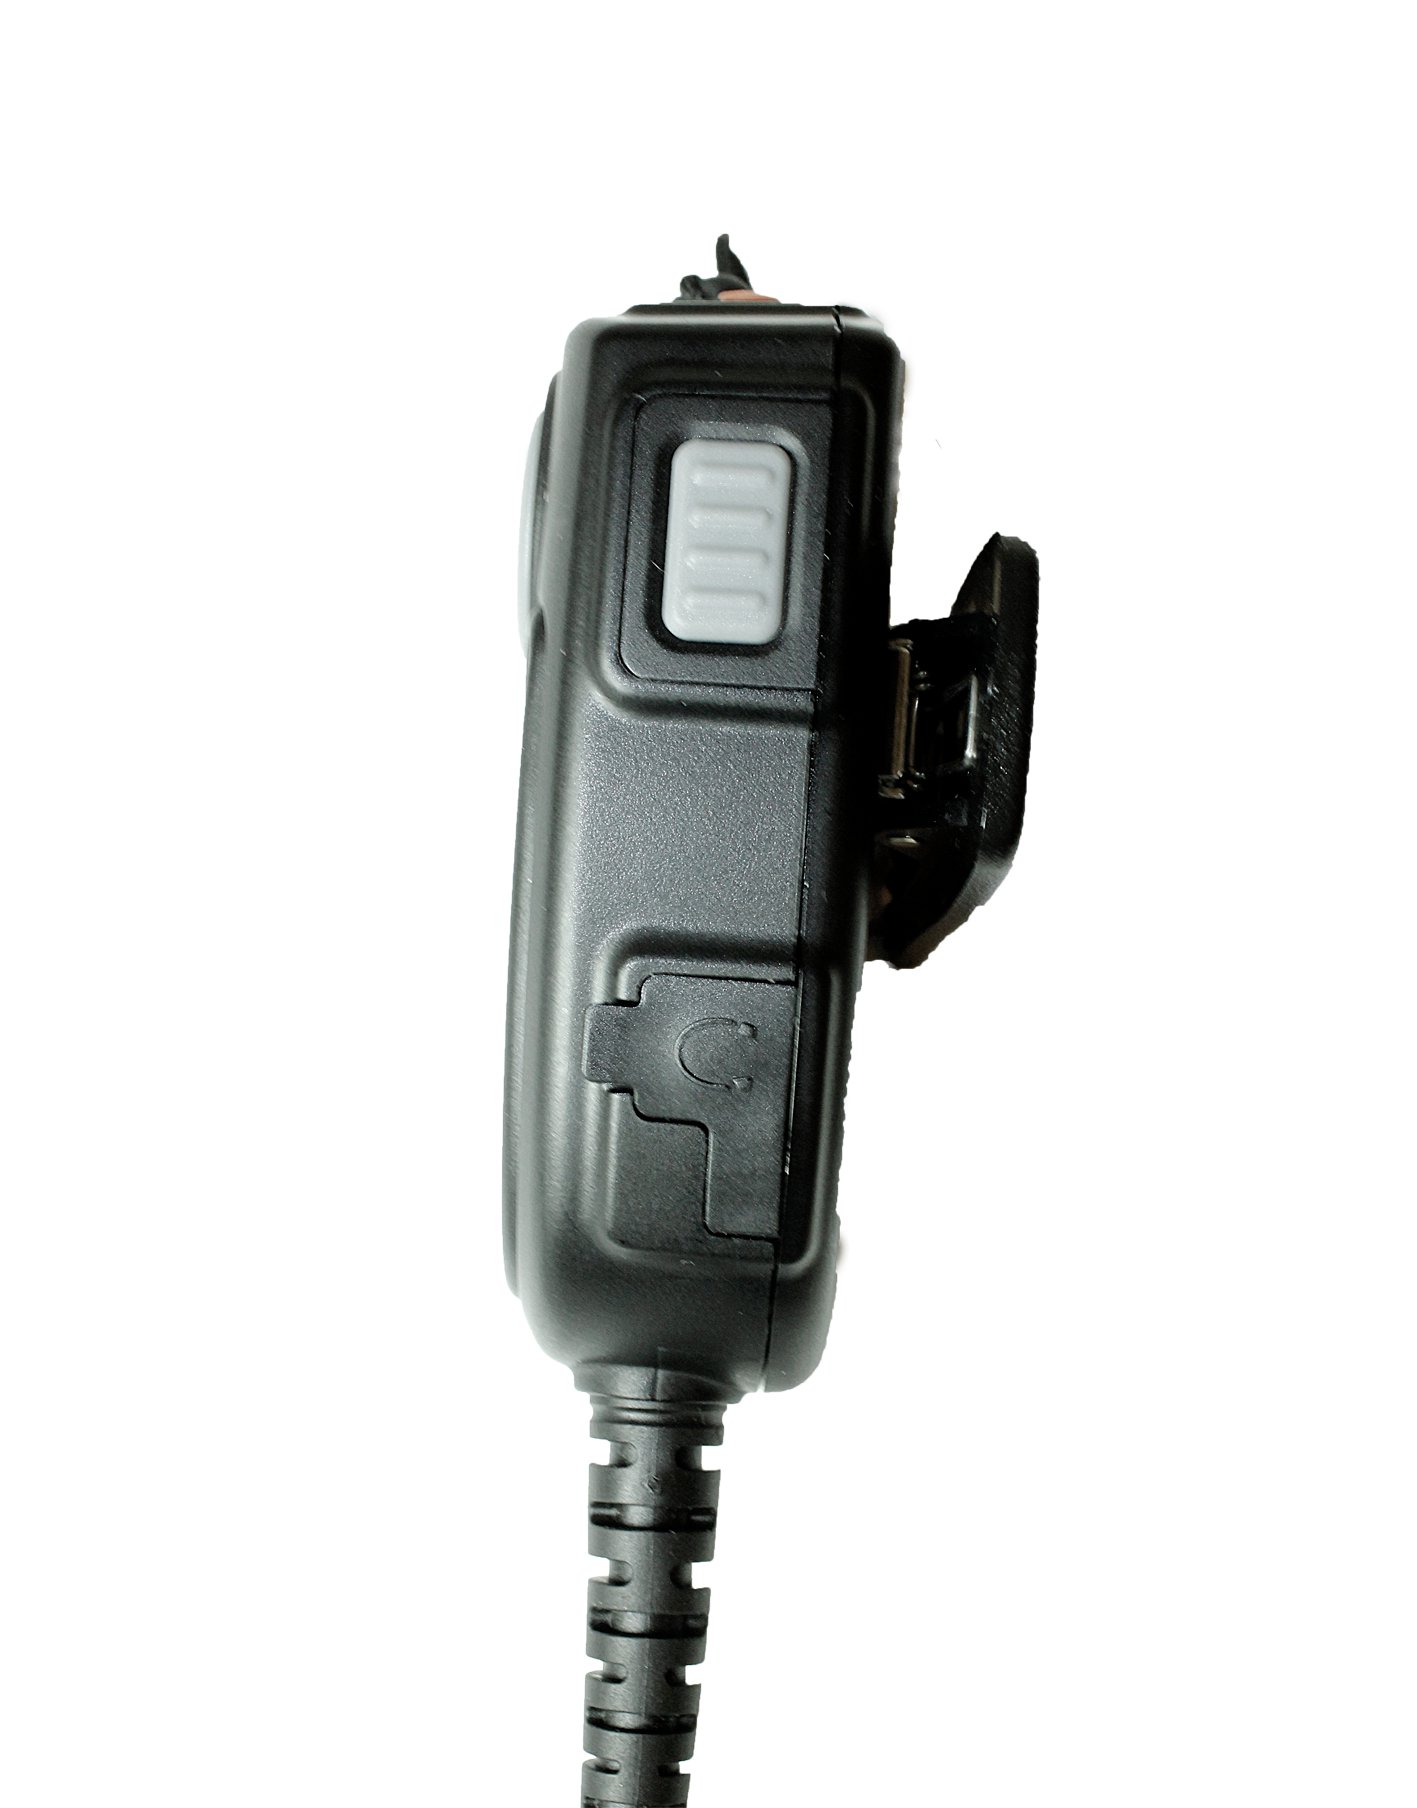 TITAN Lautsprechermikrofon MM20 mit Nexus 01 passend für Tait TP9300